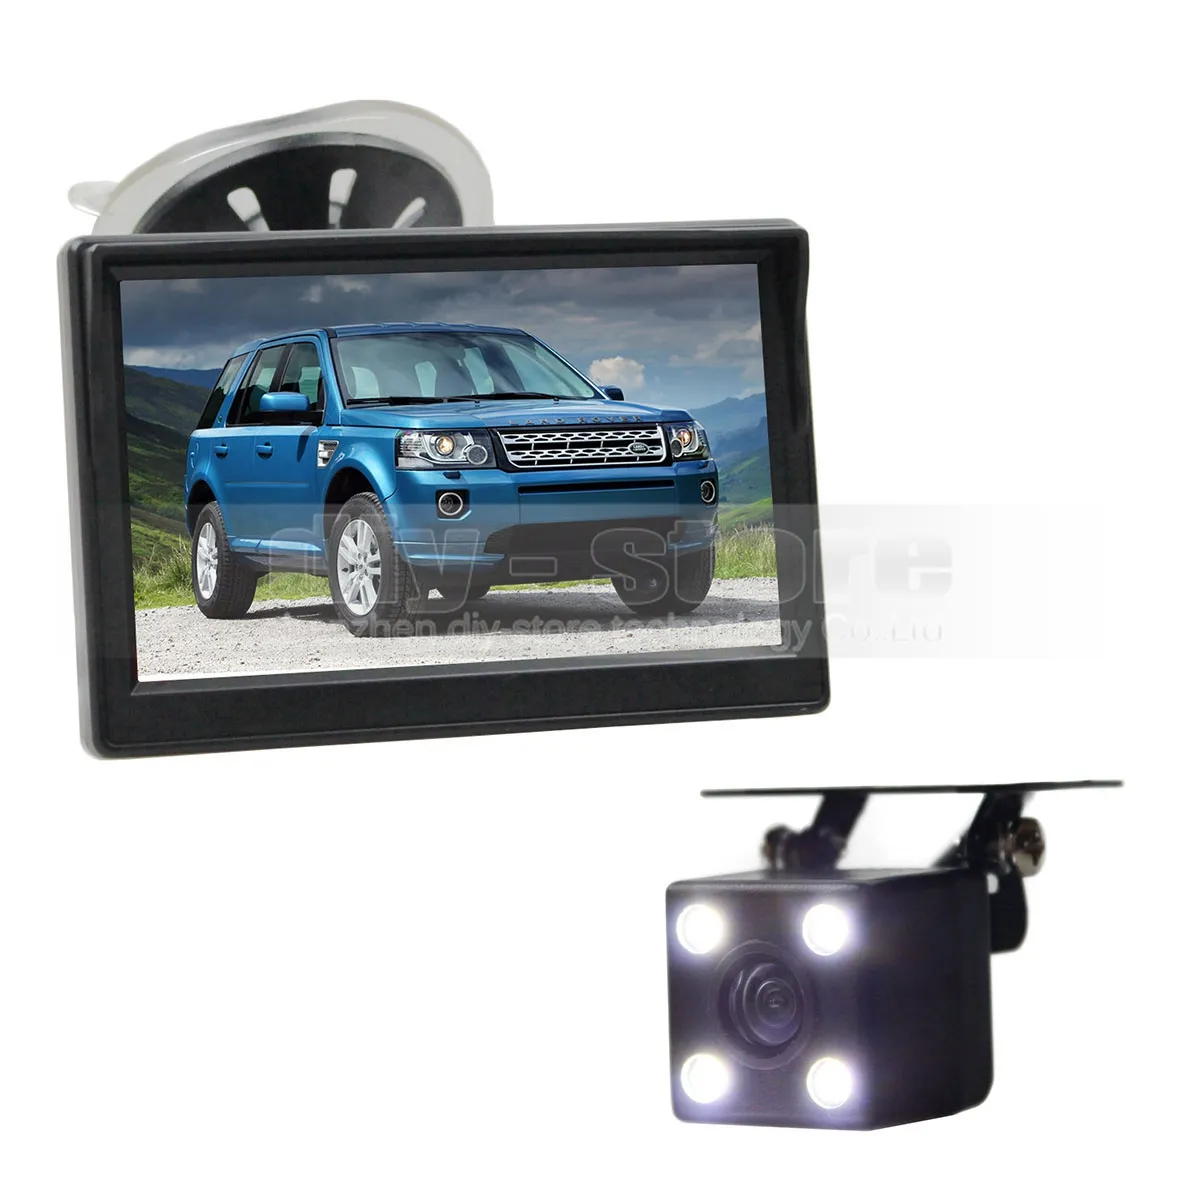 Monitor per auto retrovisore da 5 pollici + filo impermeabile per retromarcia telecamera per auto LED sistema di parcheggio per visione notturna